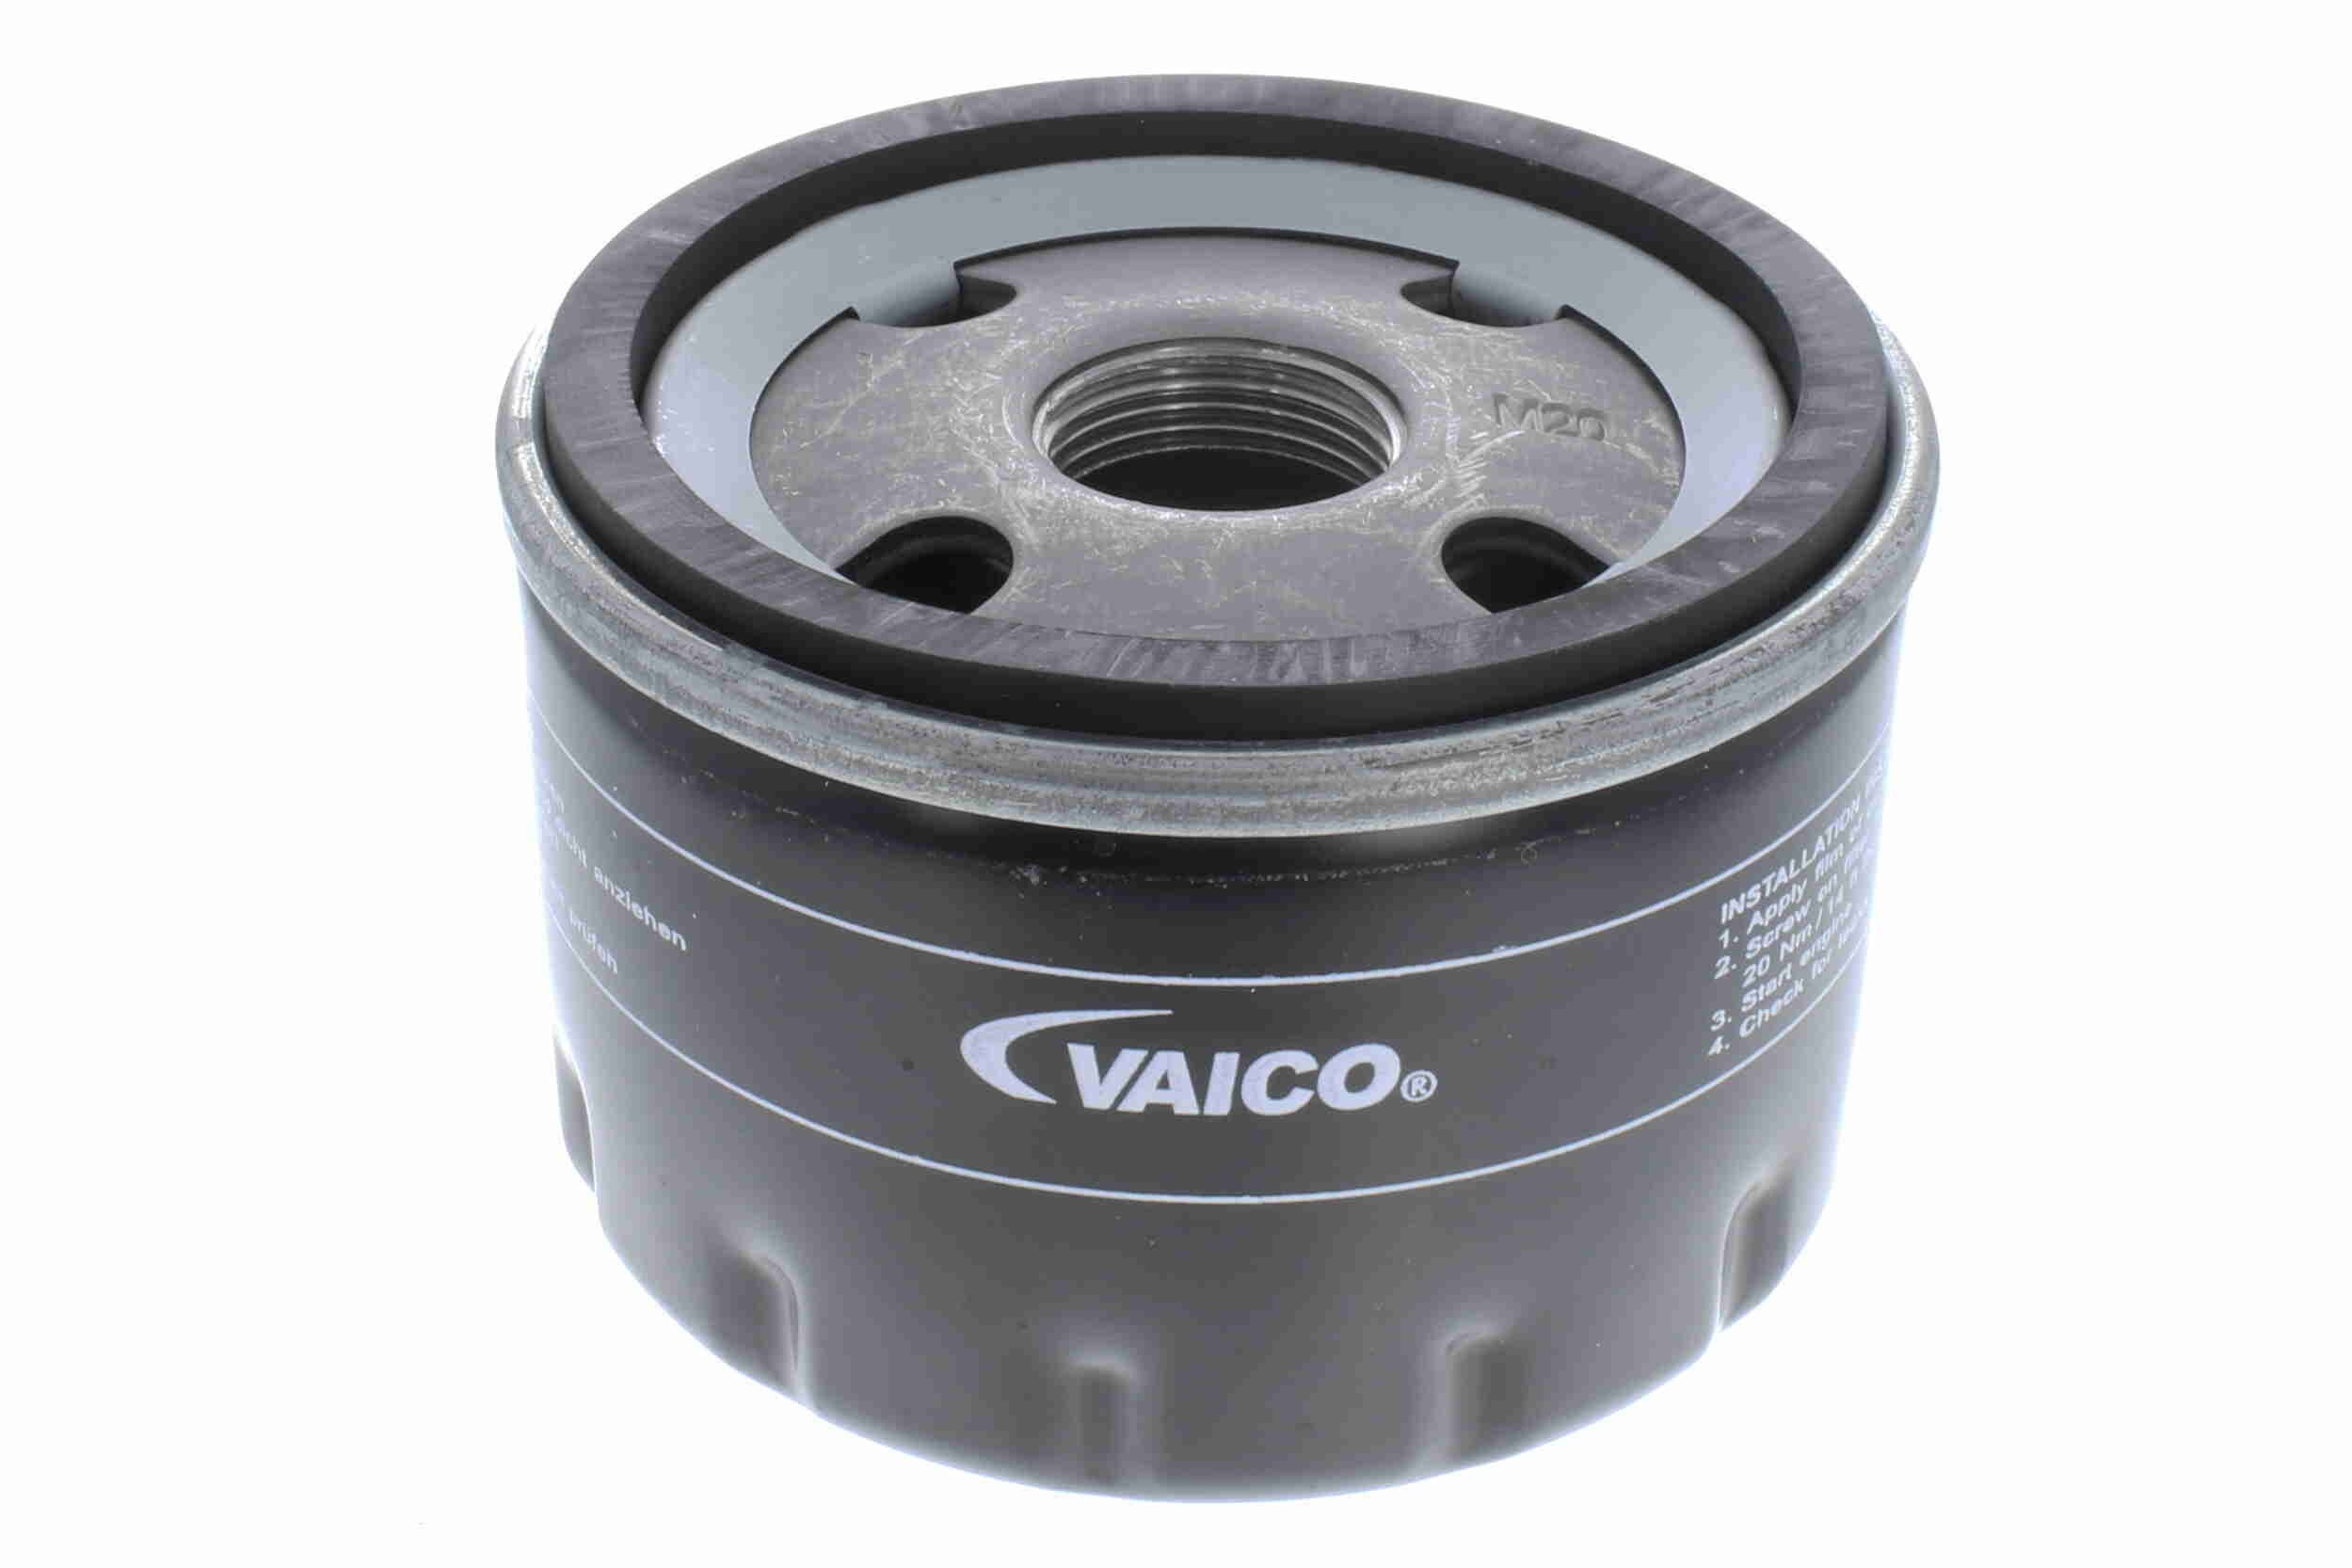 V24-0022 VAICO Ölfilter M 20 X 1,5, Original VAICO Qualität, mit